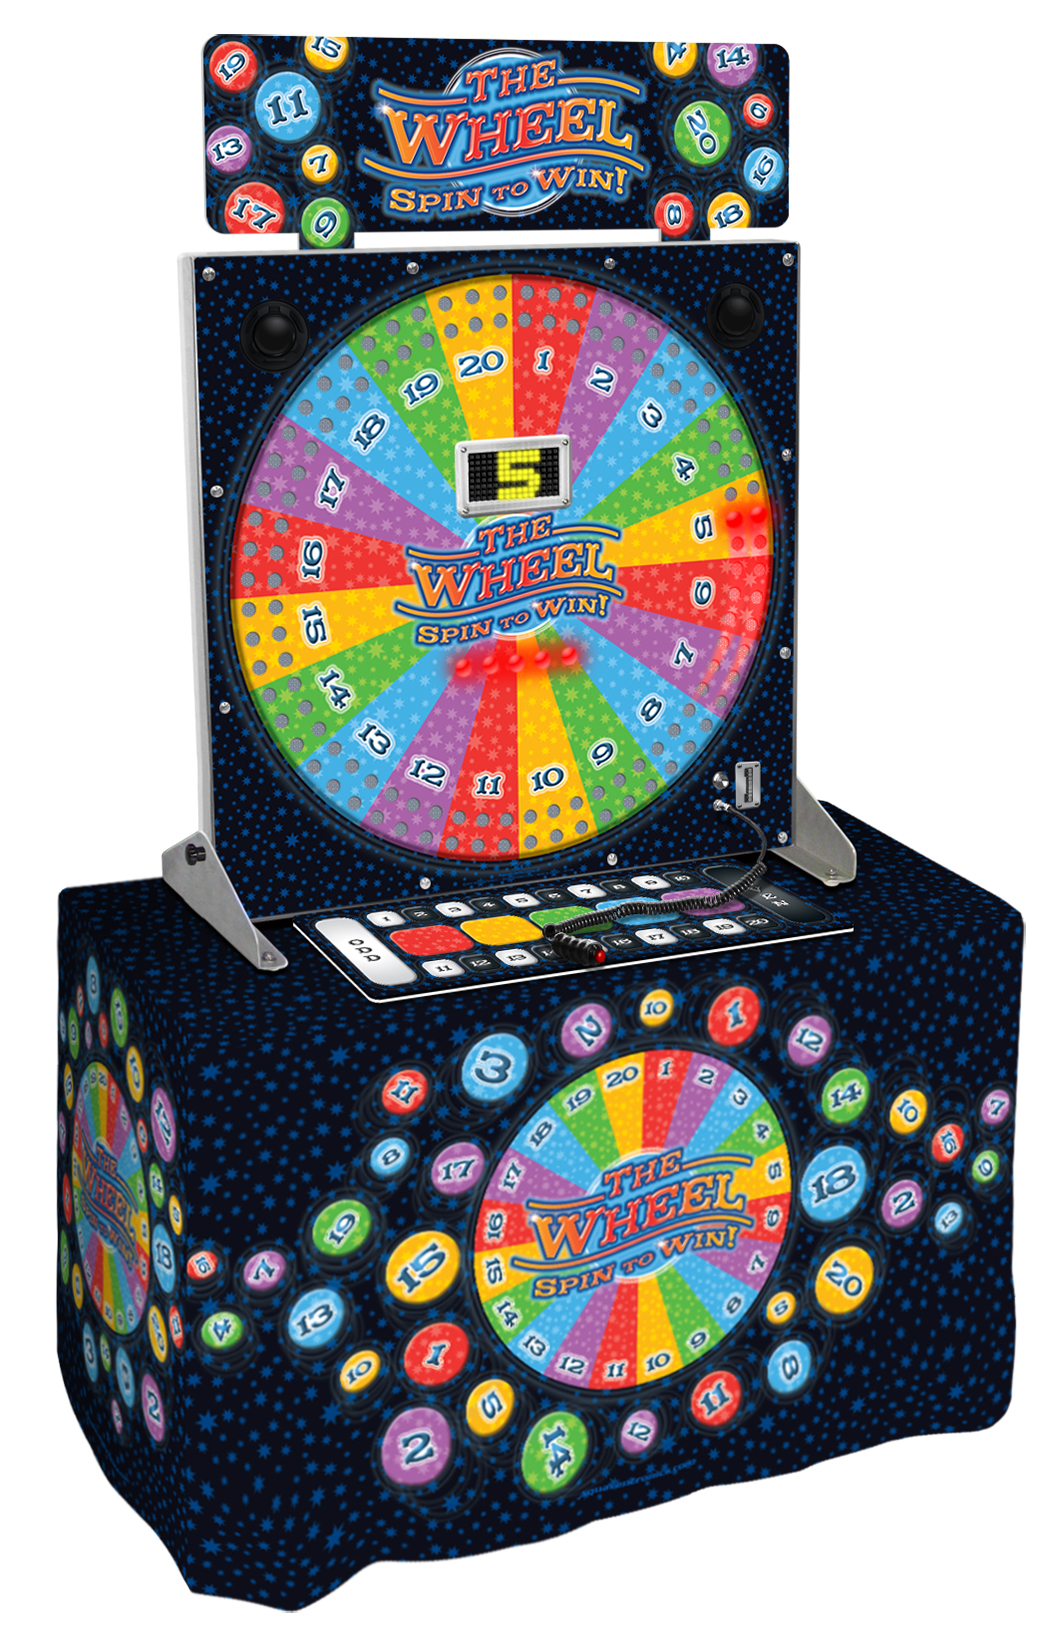 Electronic Spinning Wheel Arcade Game